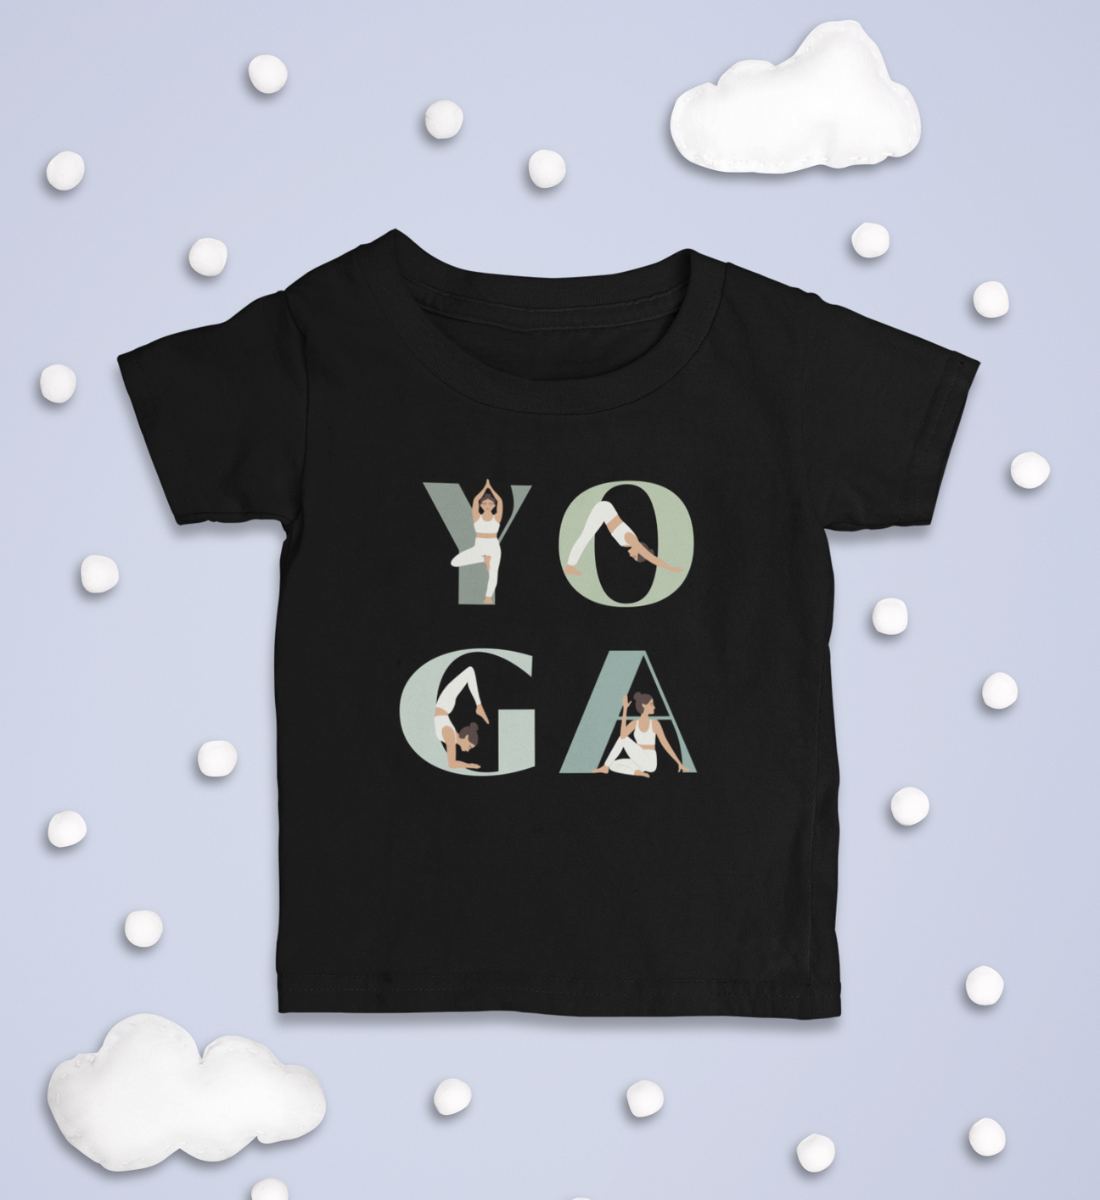 yoga girl l kinder yoga shirt l mode für kinder l nachhaltige yoga kleidung für kinder l mode für kinder online shoppen